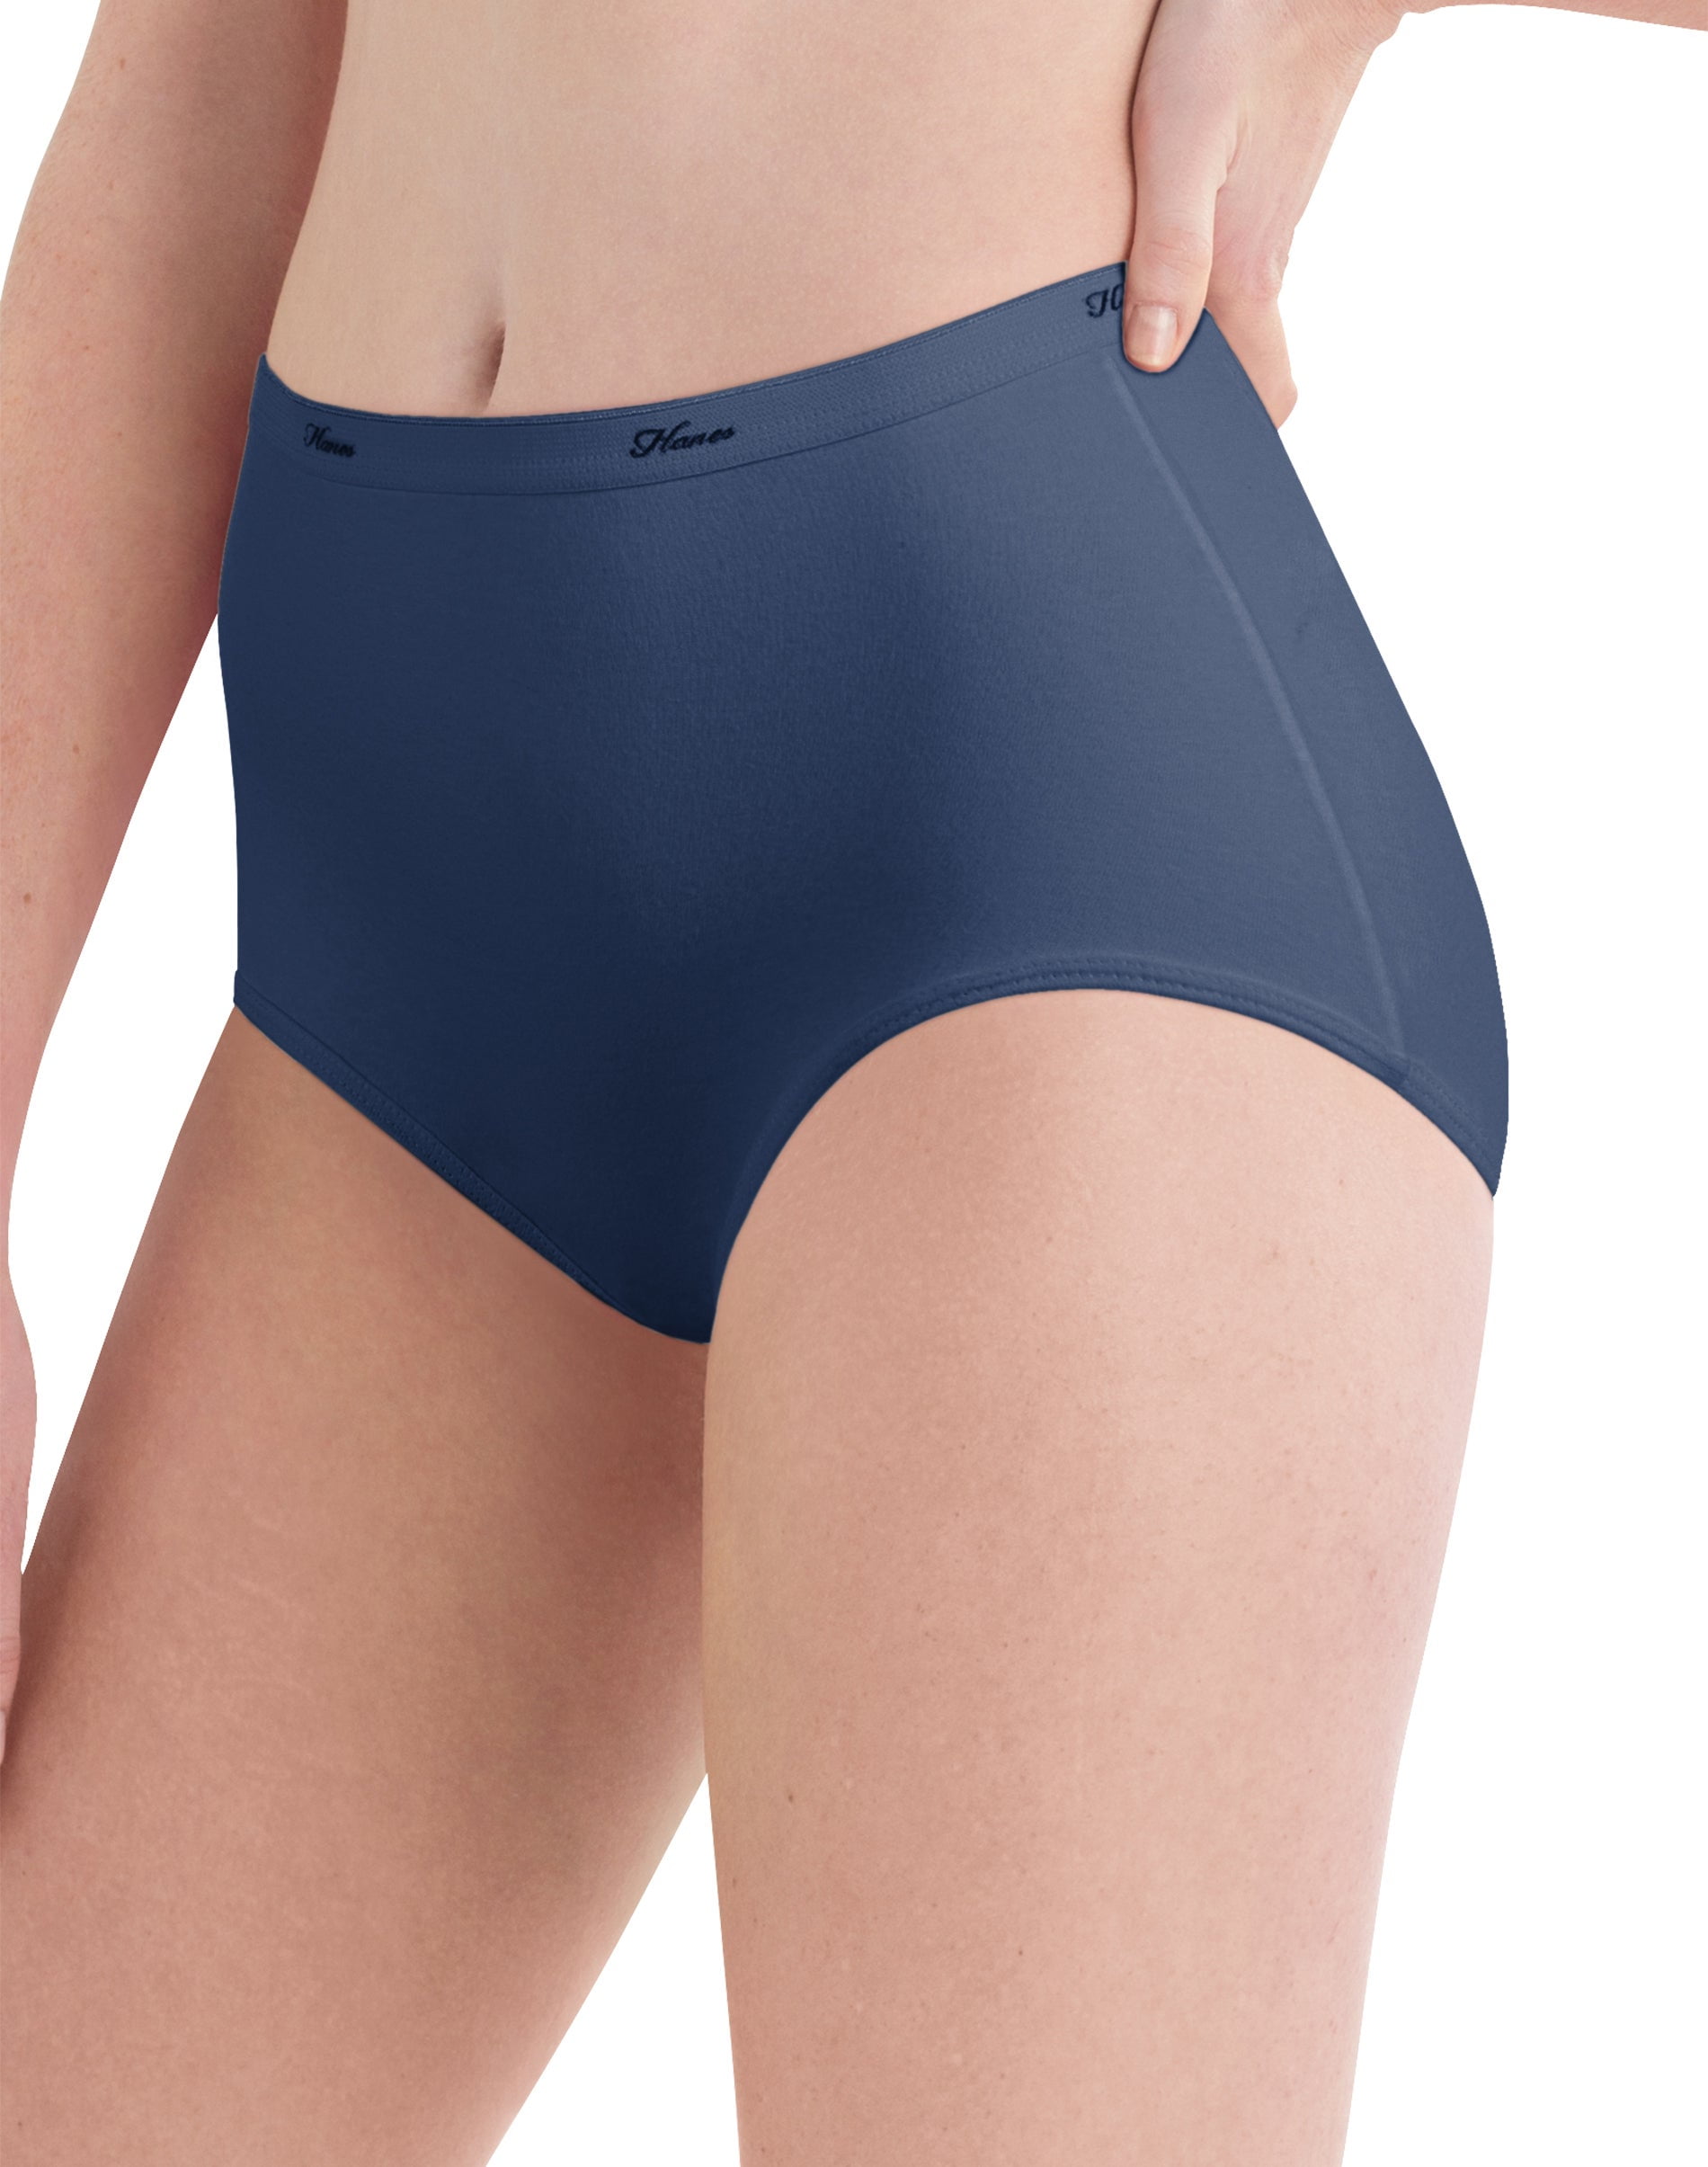 Hanes Women's High-Waisted Brief Underwear Pack, Moisture-Wicking, 6-Pack  Fashion 7 